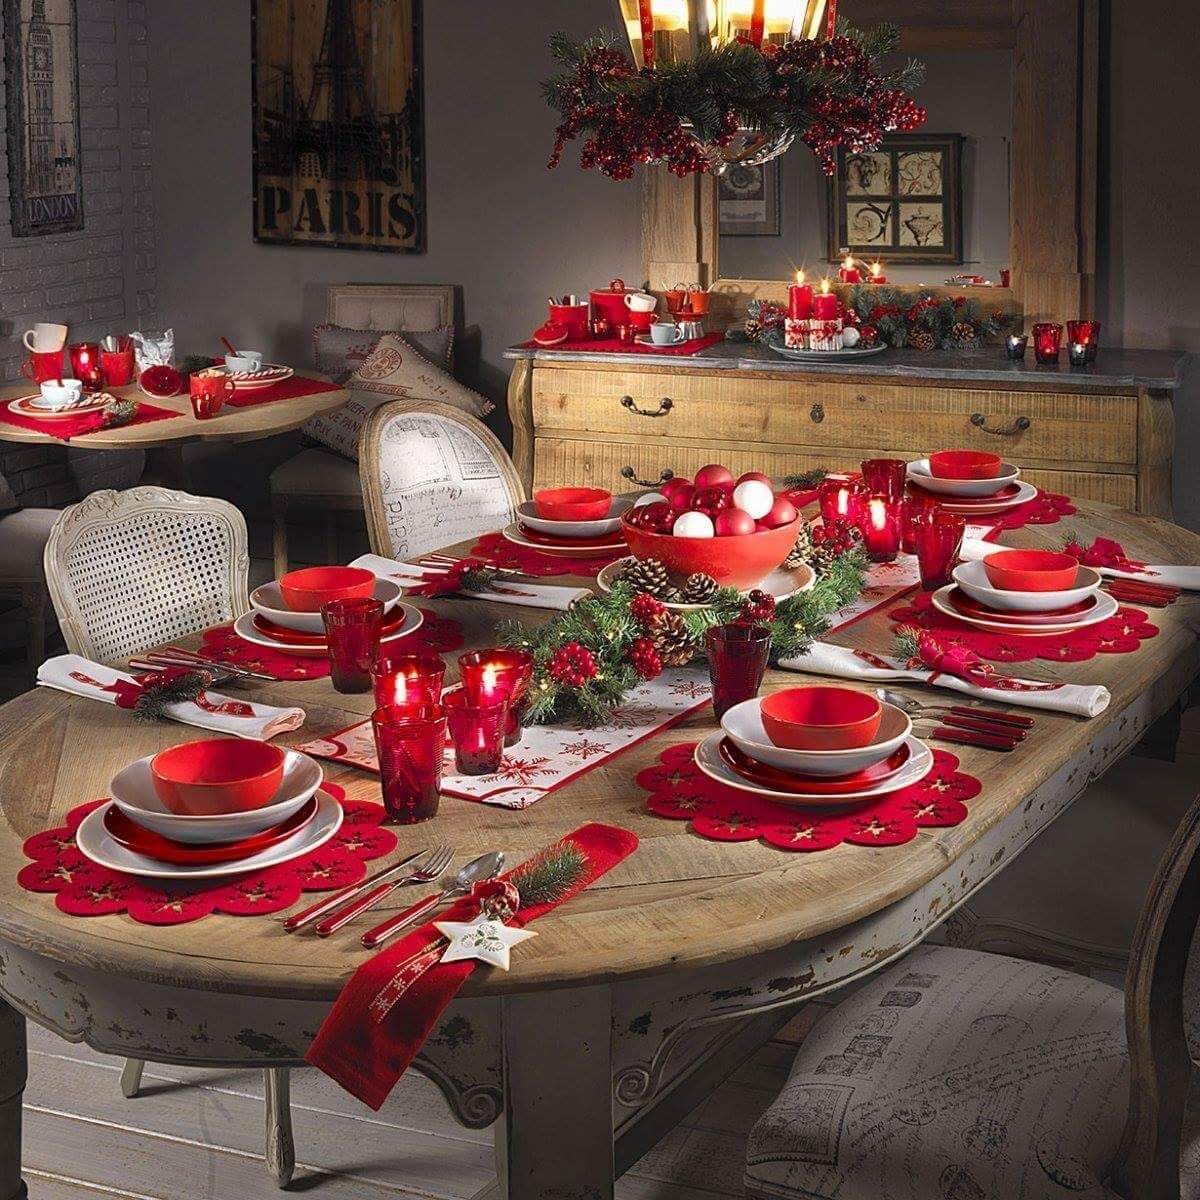 Праздничный стол - это место, где большинство людей проводят основную часть Нового года. Посуда, текстиль, столовые приборы,  декор, свечи - все это создает неповторимую атмосферу.